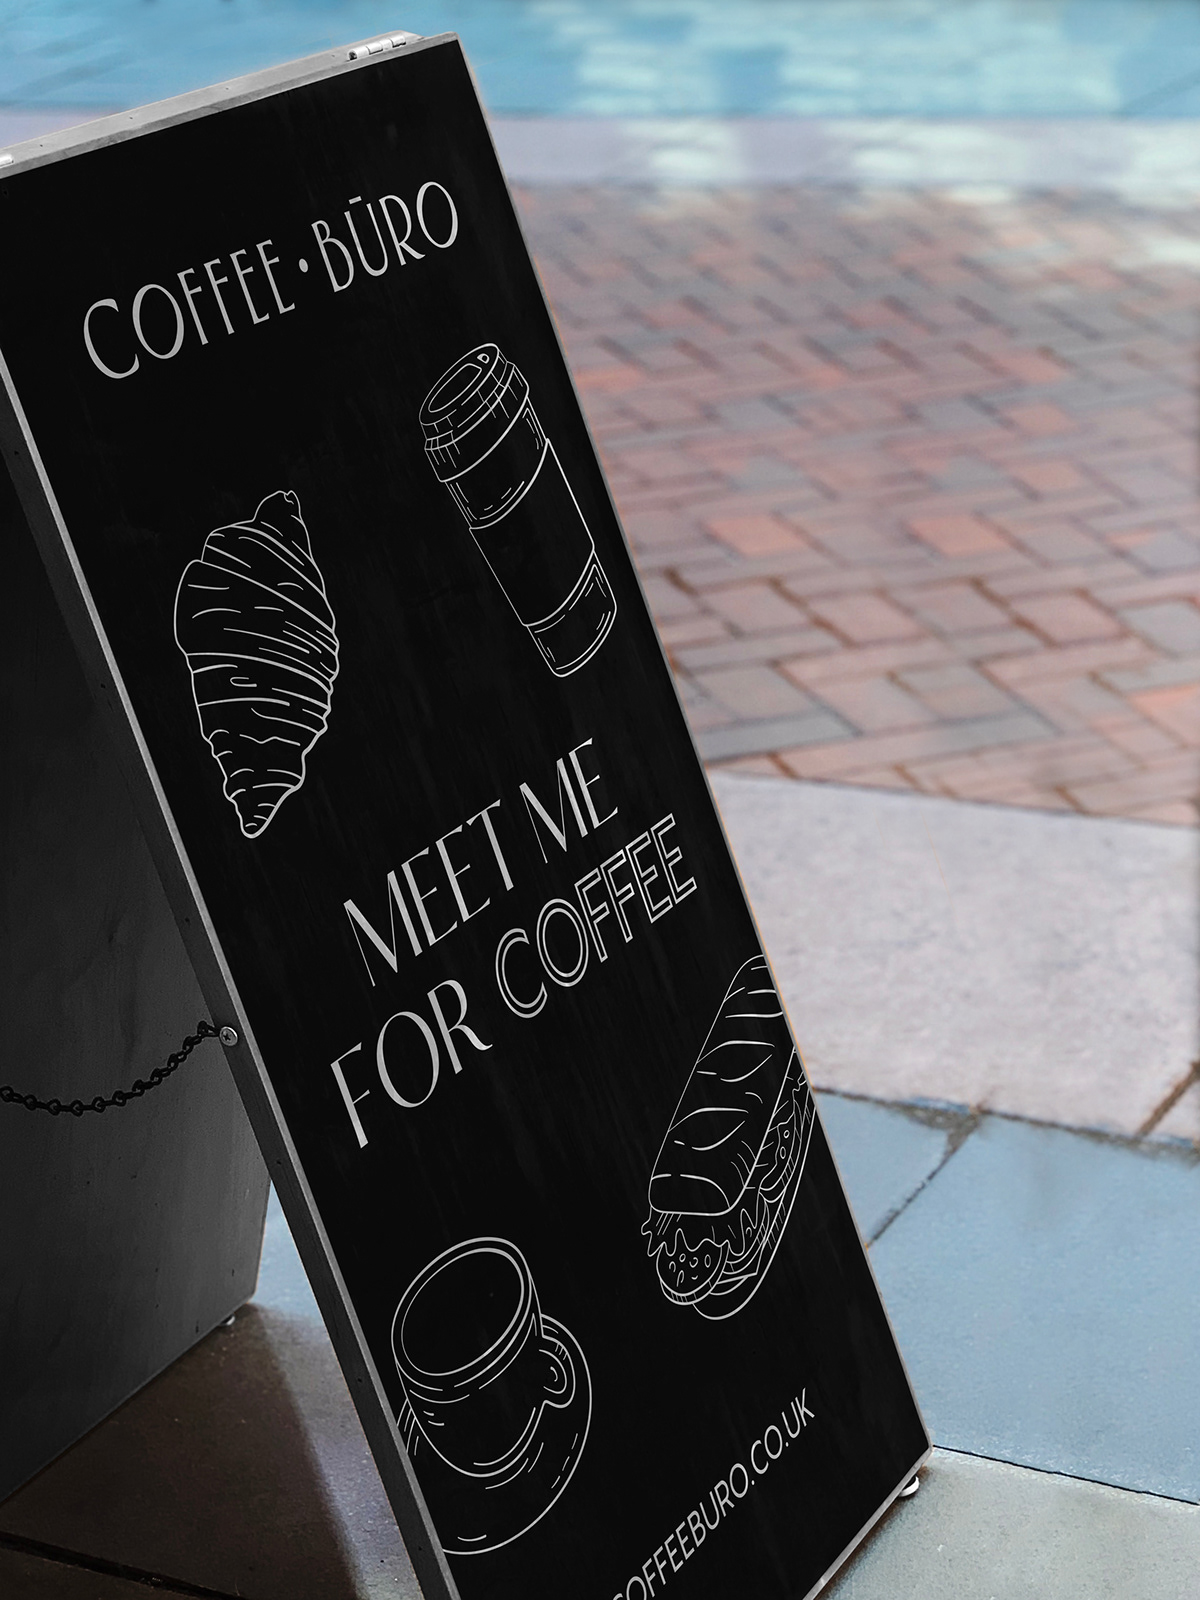 简约高端的咖啡品牌视觉设计欣赏